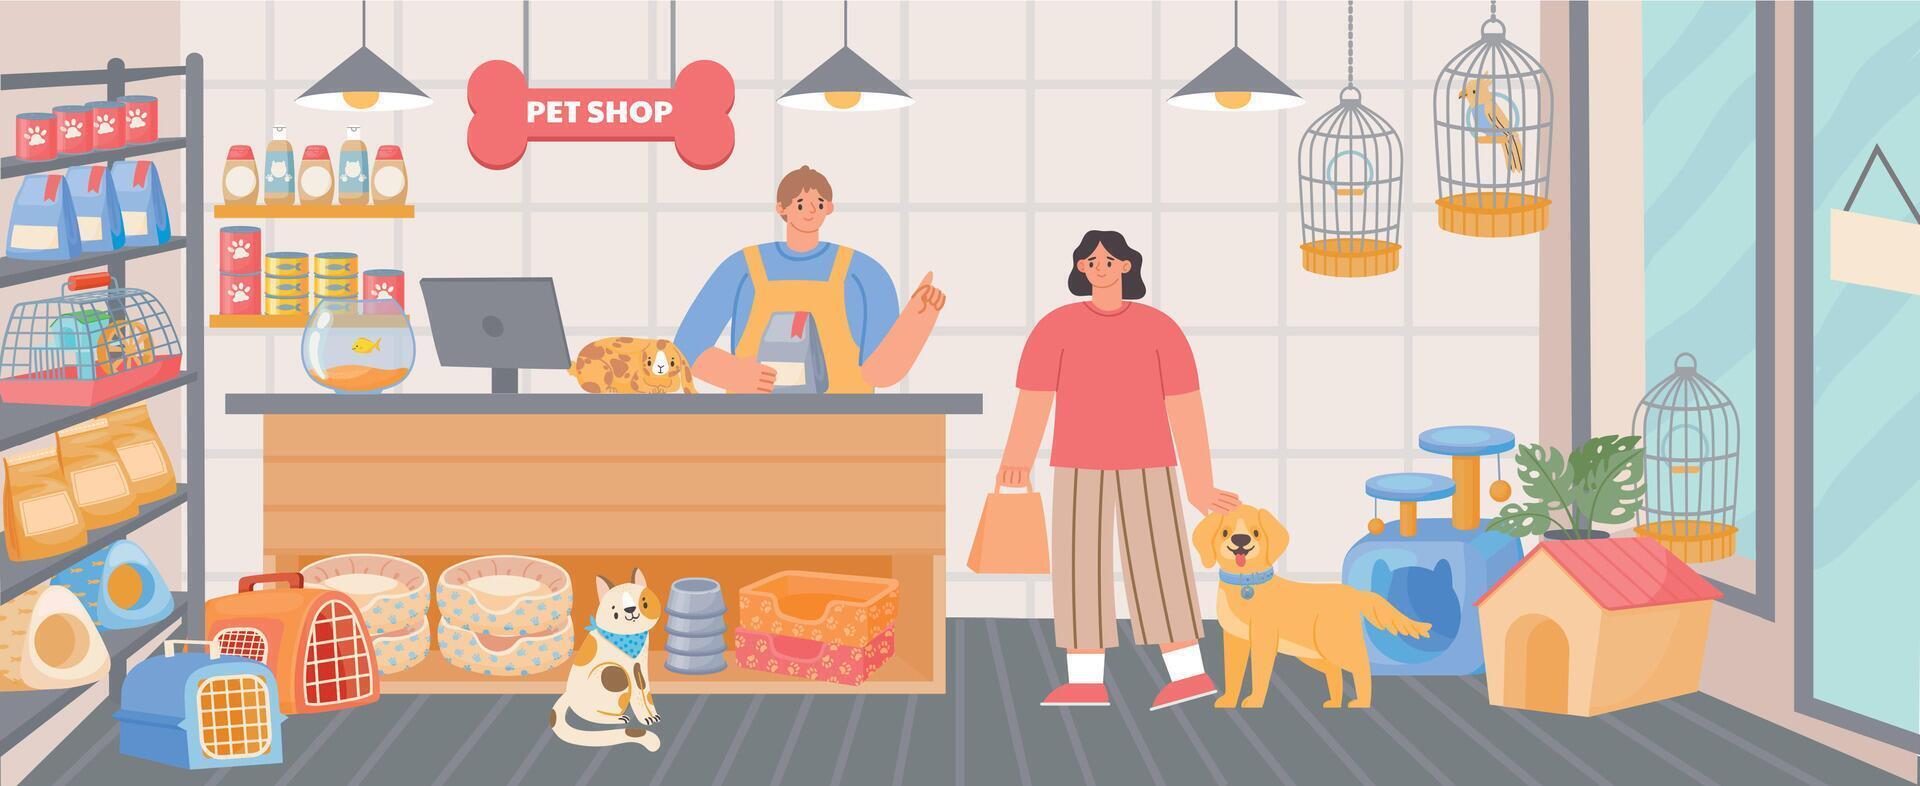 Haustier Geschäft Innerhalb Innere mit Kassierer und Kunde mit Hund. Tier Essen, Zubehörteil und Spielzeuge im speichern. Karikatur Zoo Supermarkt Vektor Szene